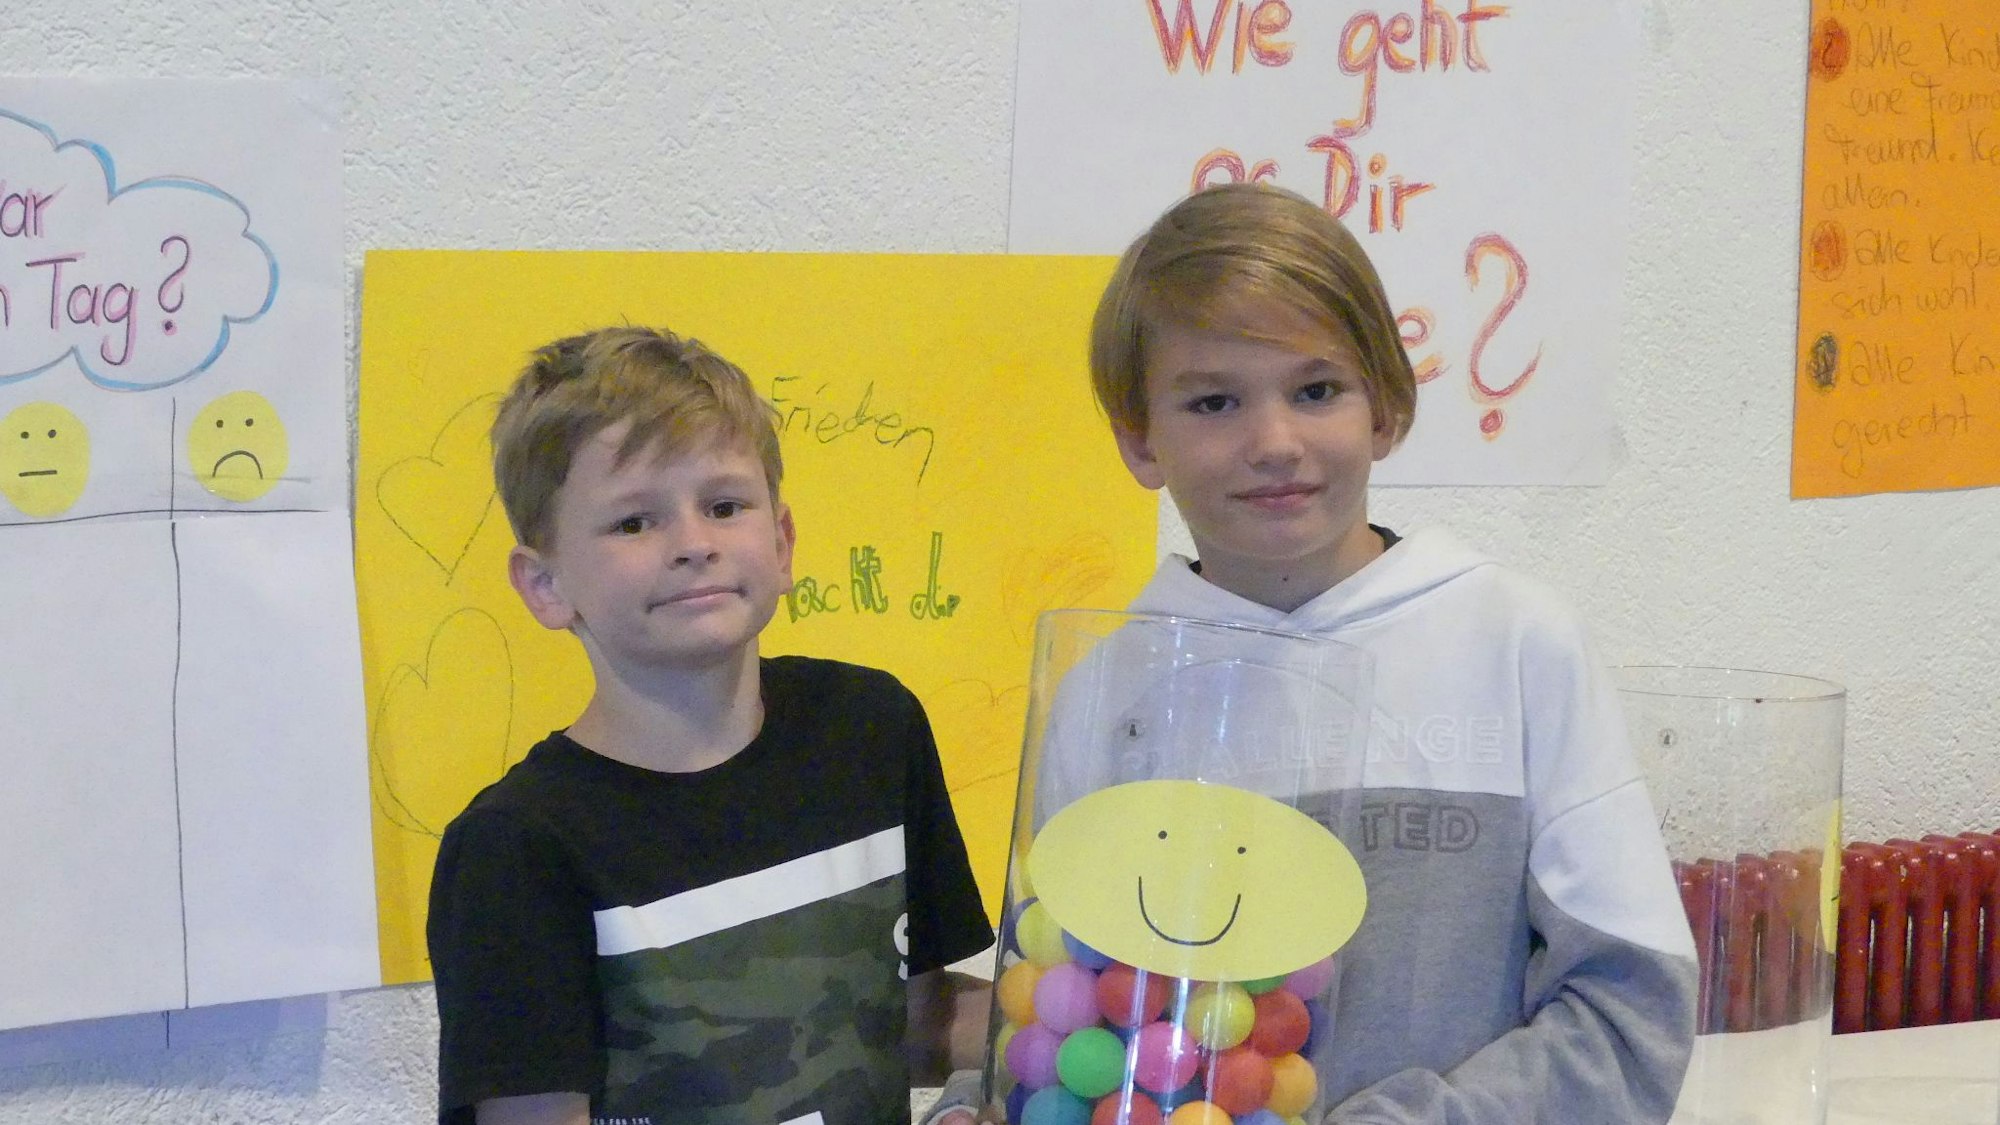 Zwei Kinder stehen vor einem gelben Plakat. Eins hat ein Glas mit bunten Bällen darin in der Hand.